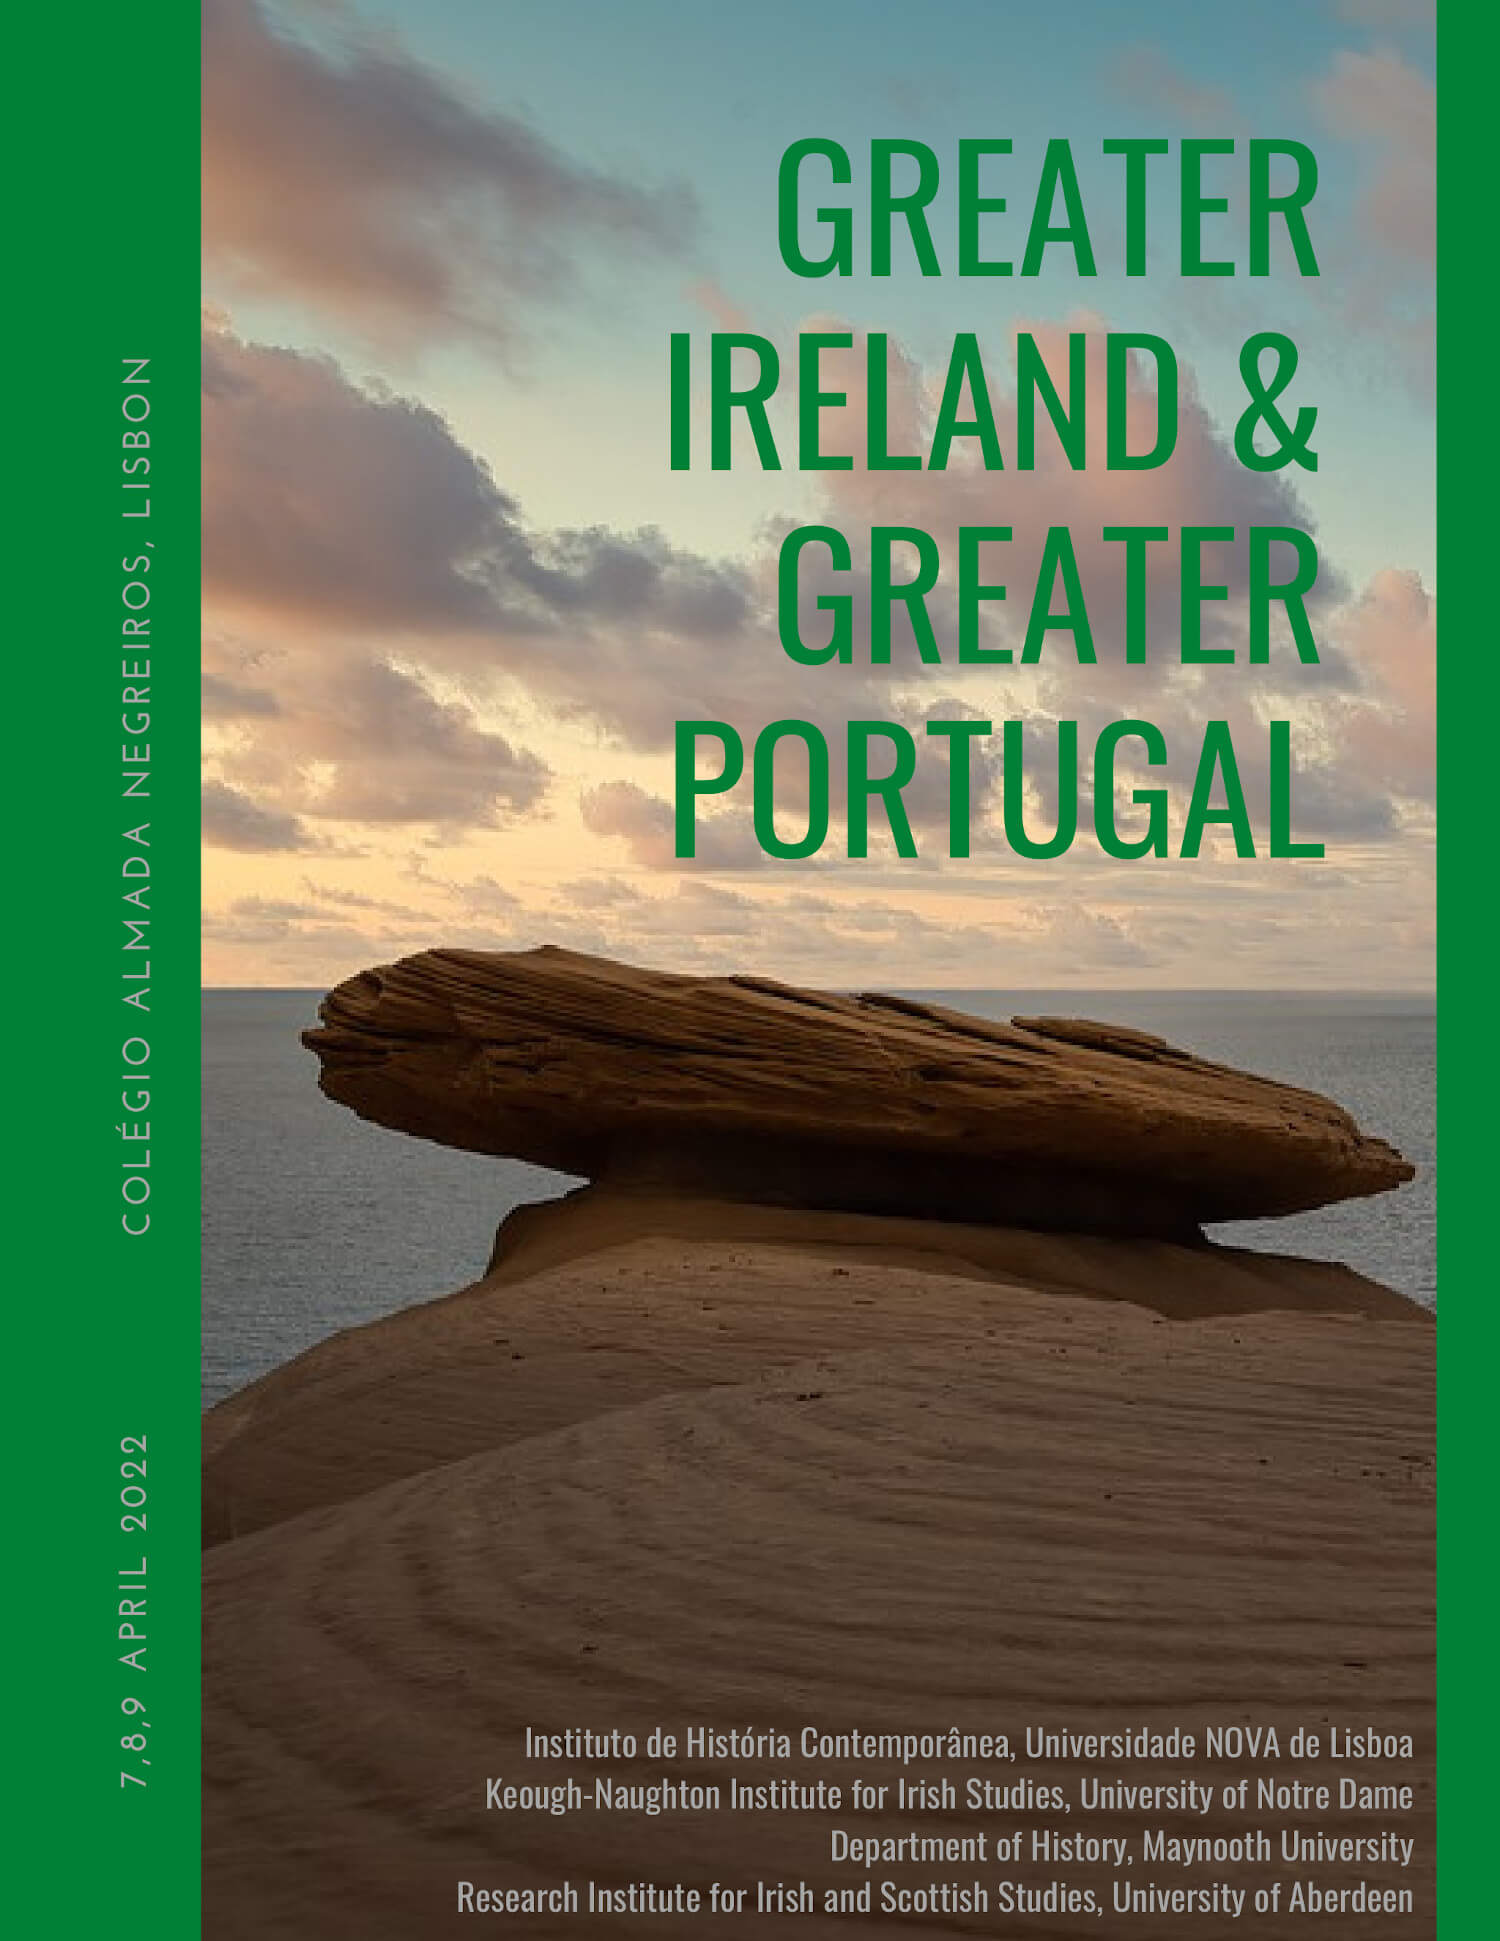 Cartaz do colóquio "Greater Ireland & Greater Portugal", 7 a 9 de Abril, no Colégio Almada Negreiros